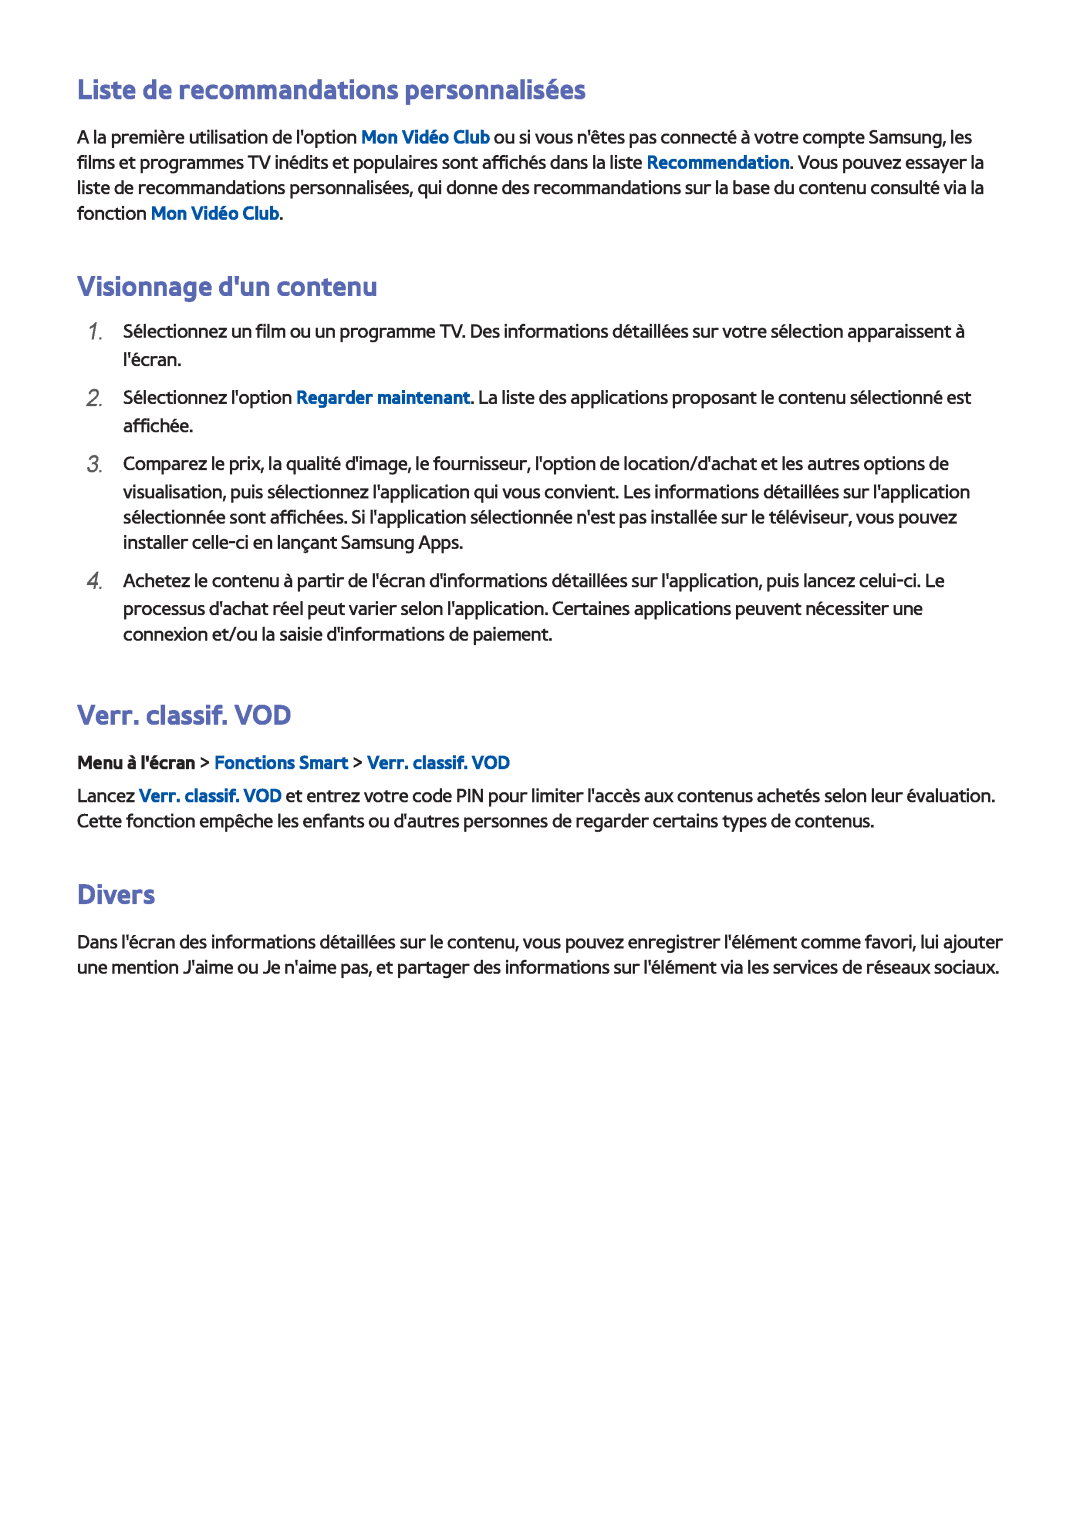 Samsung UE40F6640SSXZF manual Liste de recommandations personnalisées, Visionnage dun contenu, Verr. classif. VOD, Divers 